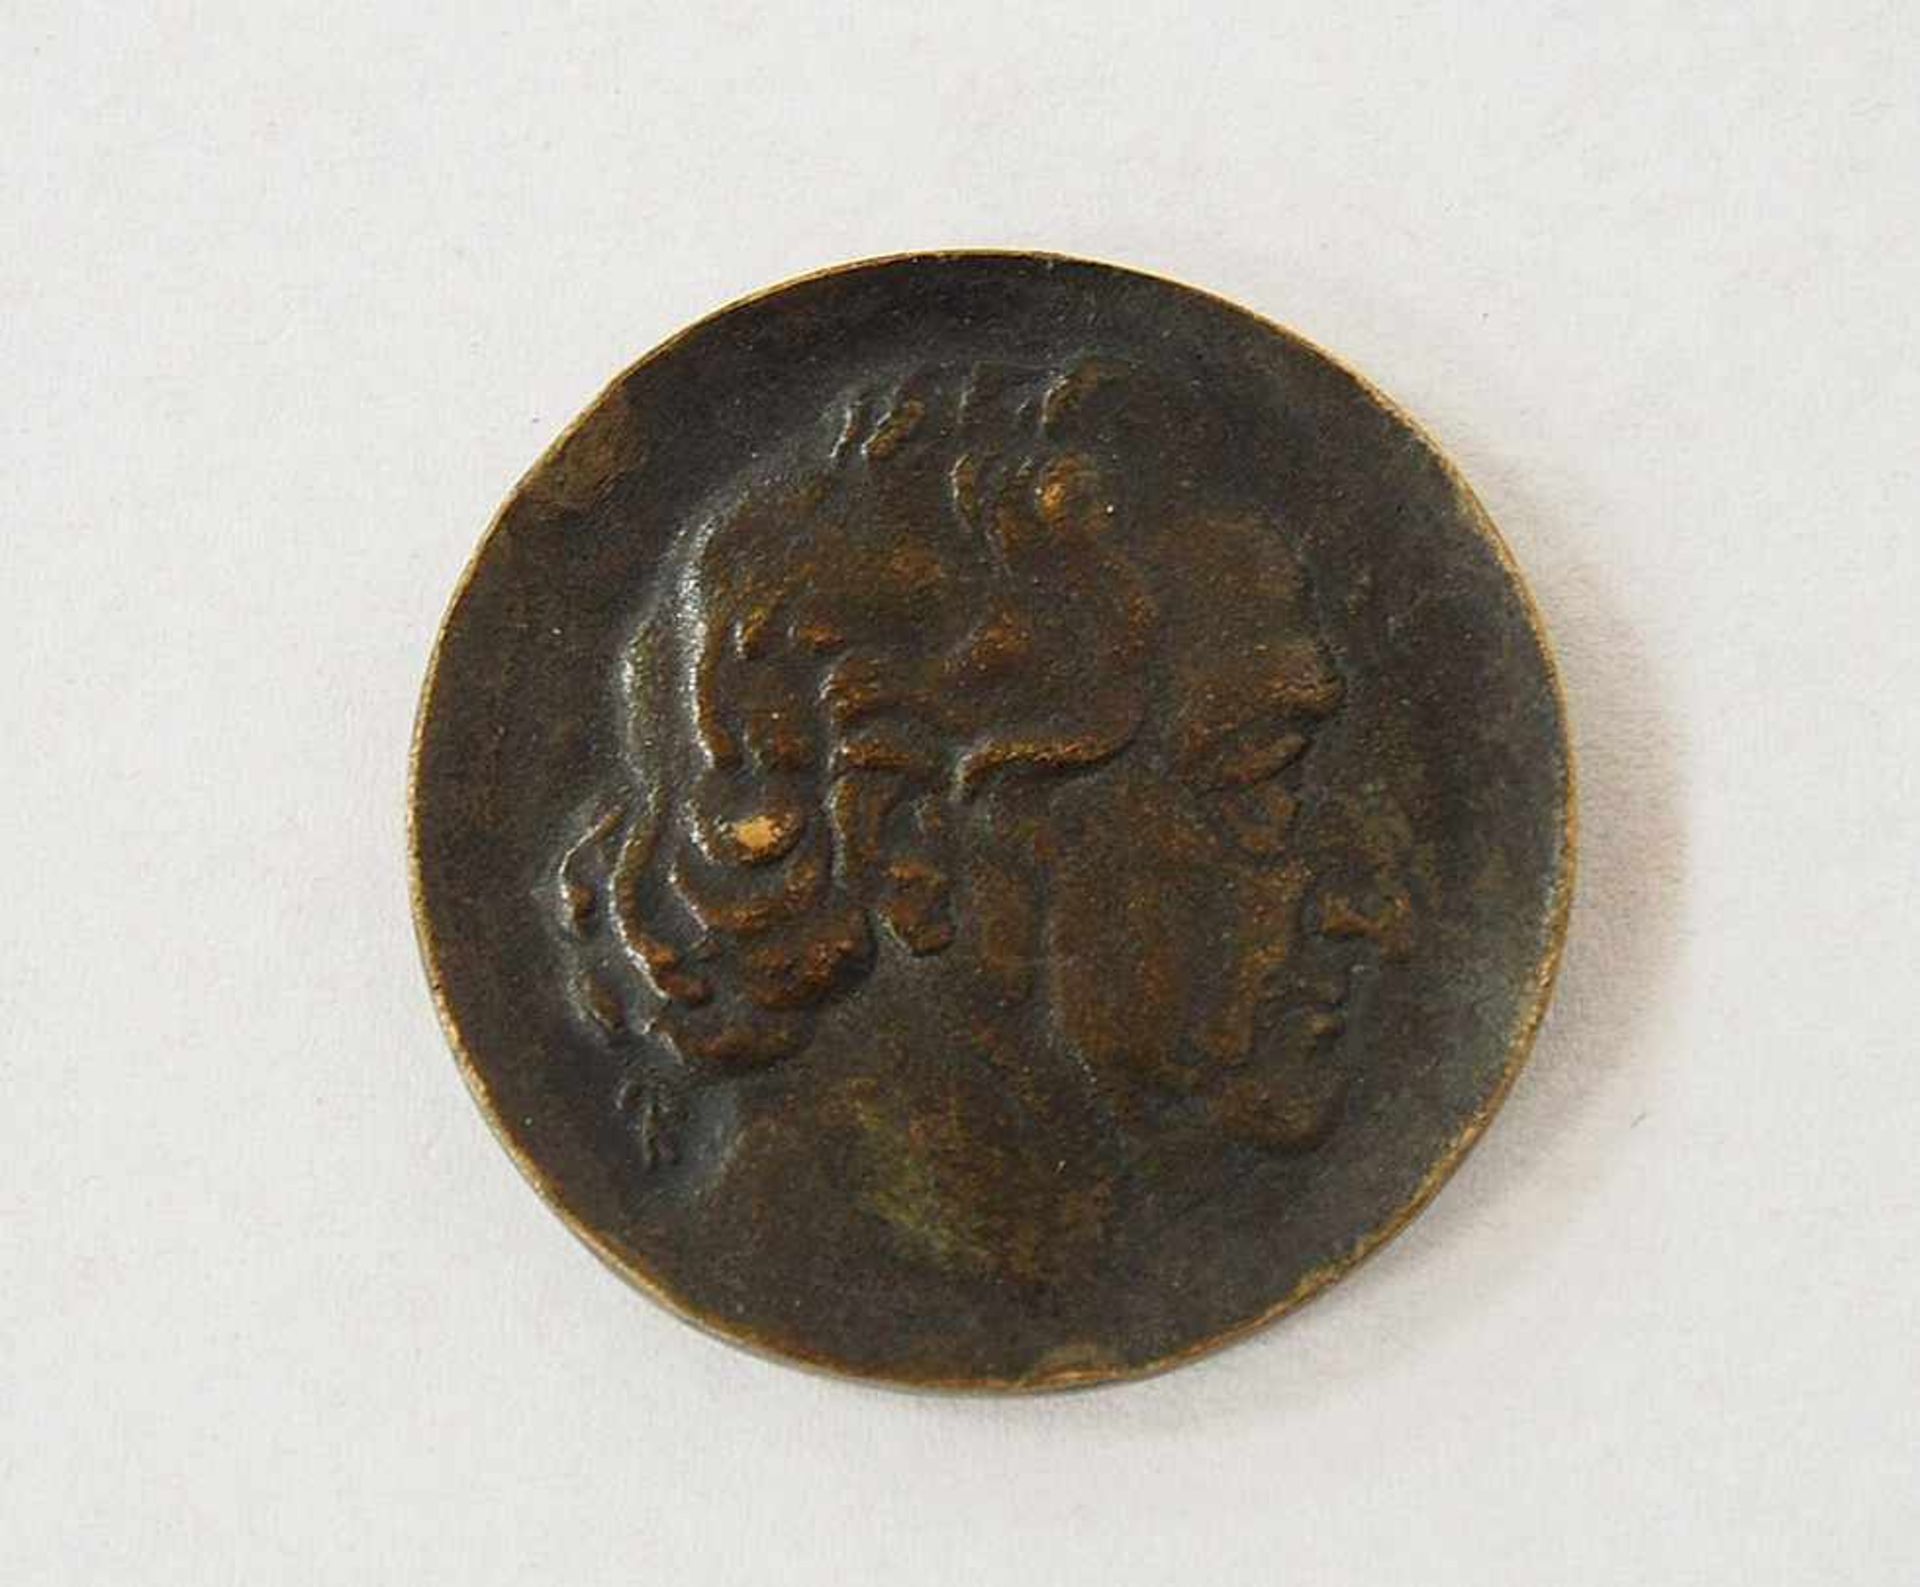 Goethe-Medaille von 1949Bronze, Durchmesser 5,2 cm, in Originalbox- - -25.00 % buyer's premium on - Bild 3 aus 3